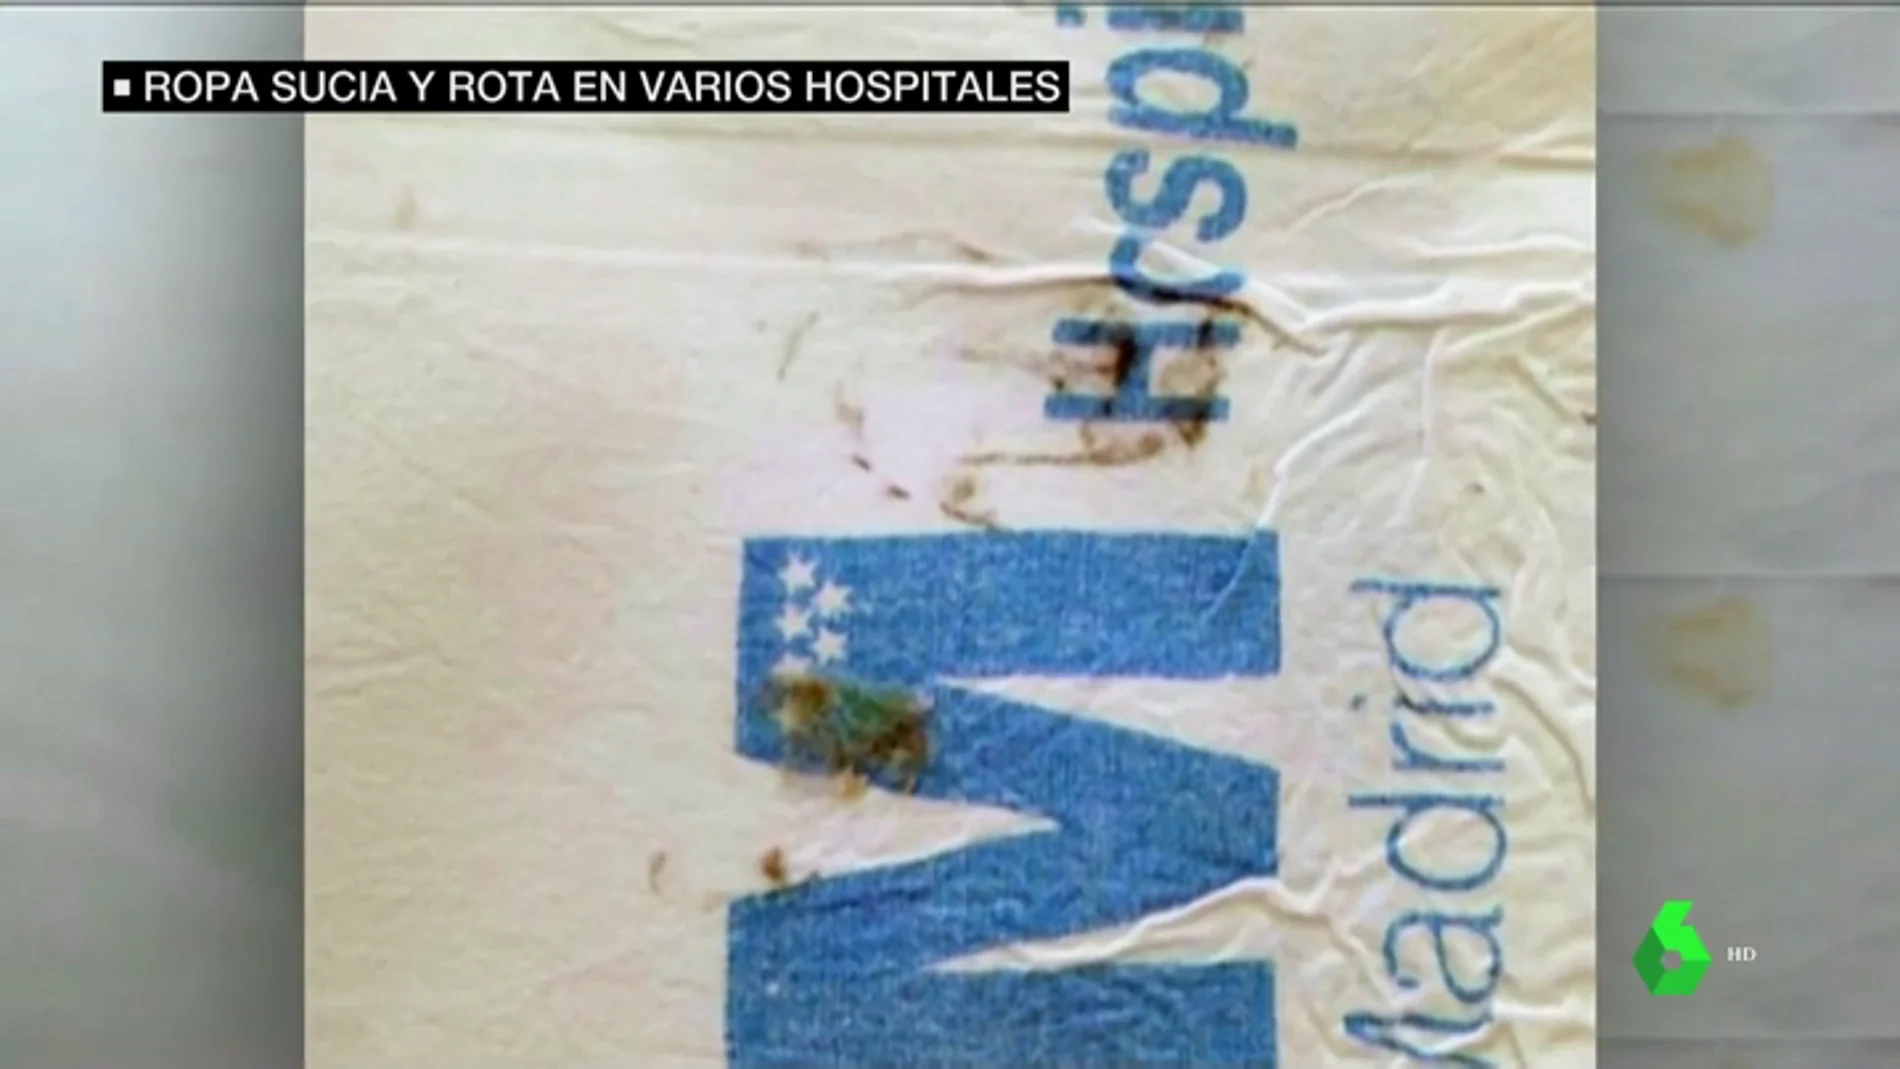 Denuncian el mal estado de la ropa de cama en hospitales de Madrid: sábanas rotas, con heces y manchas de orina